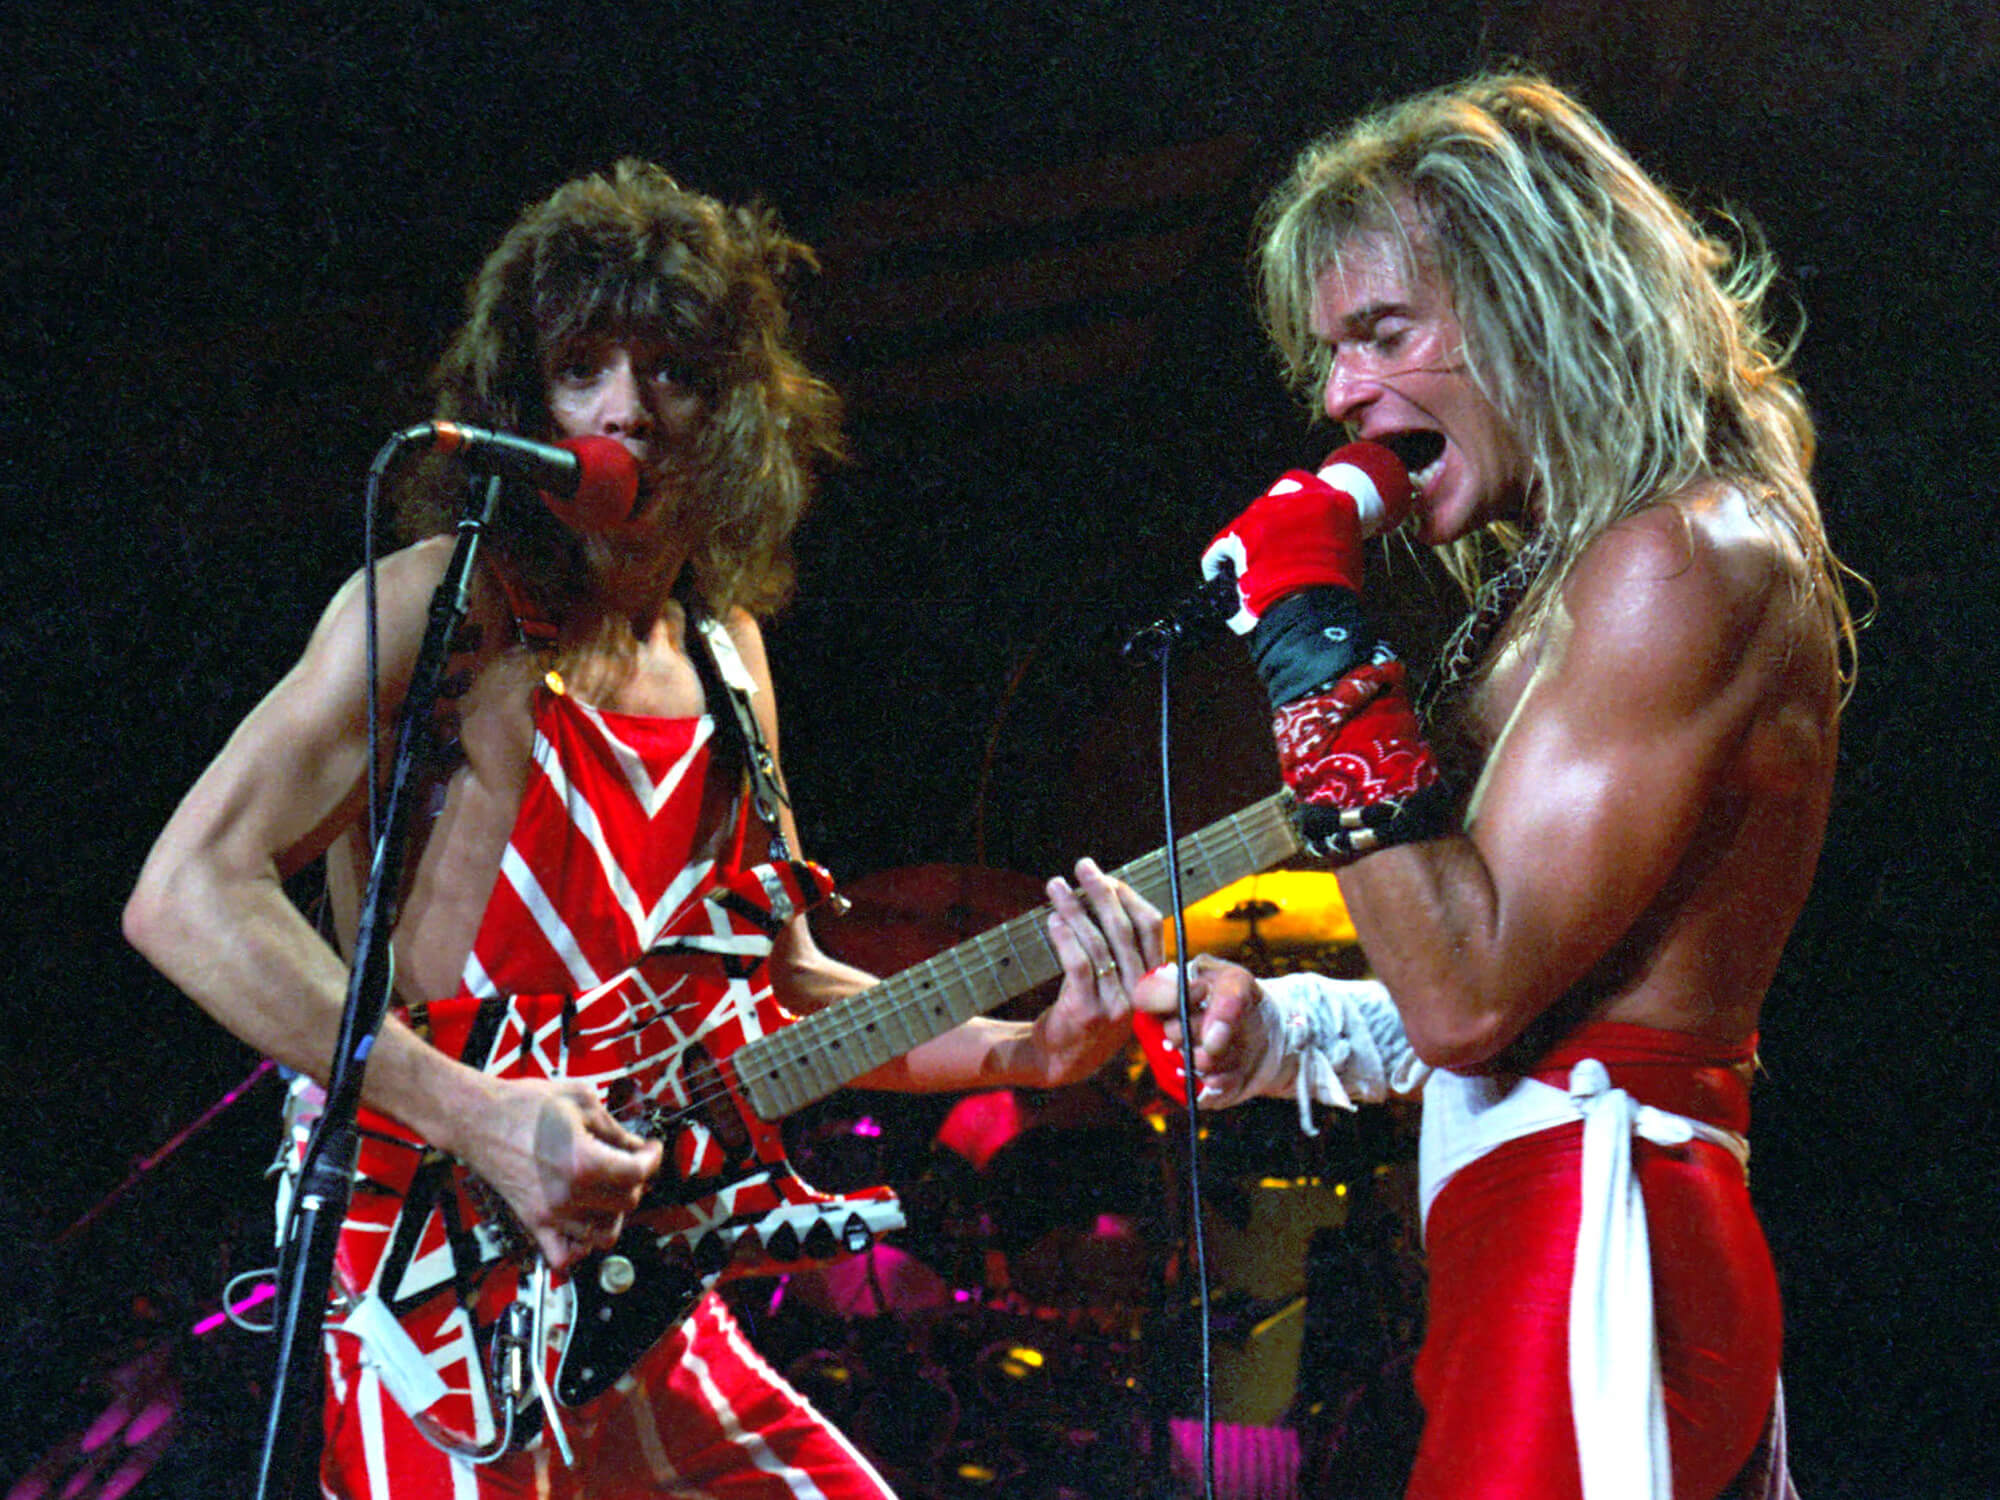 Eddie Van Halen and David Lee Roth